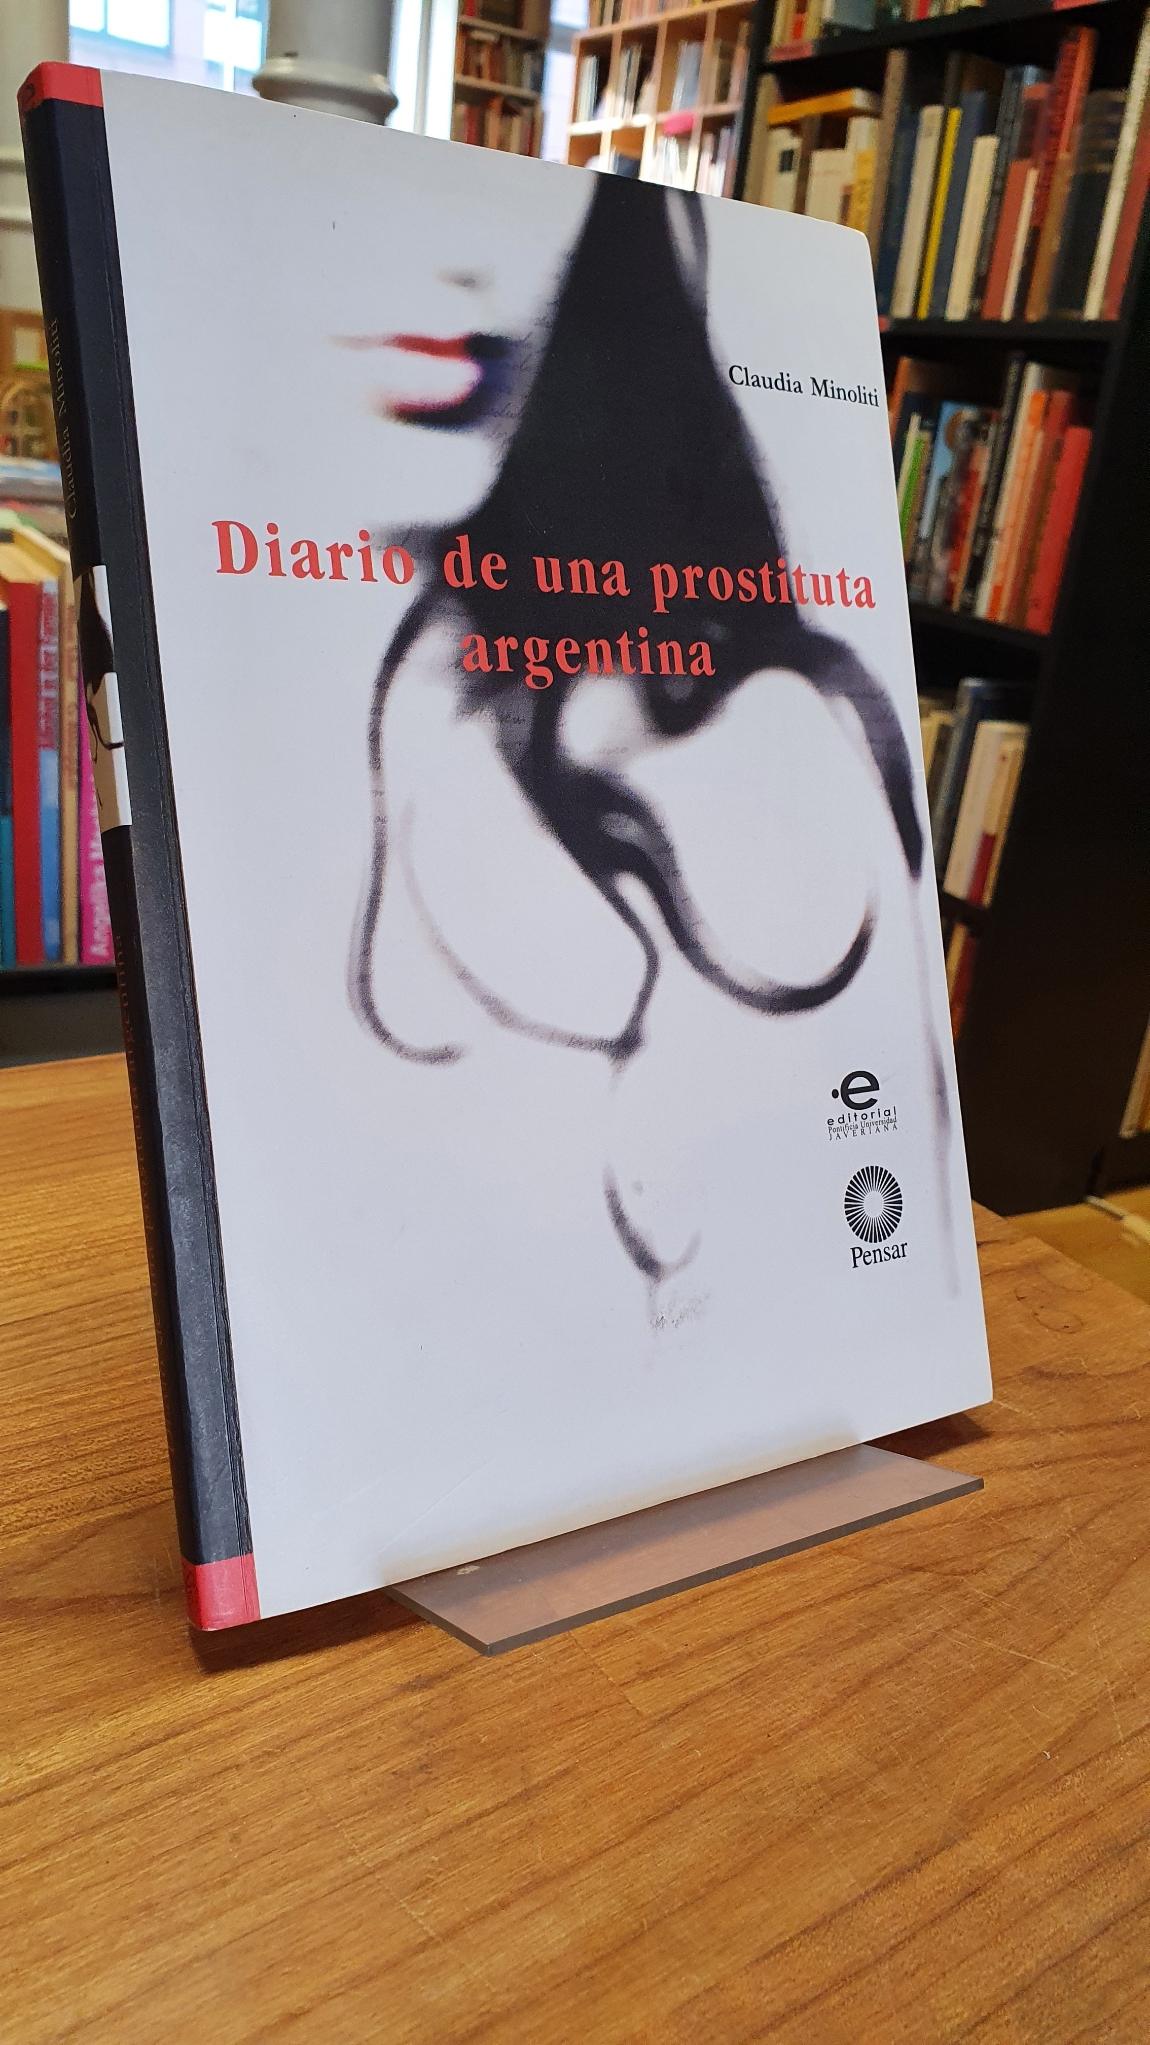 Minoliti, Diario de una prostituta argentina,